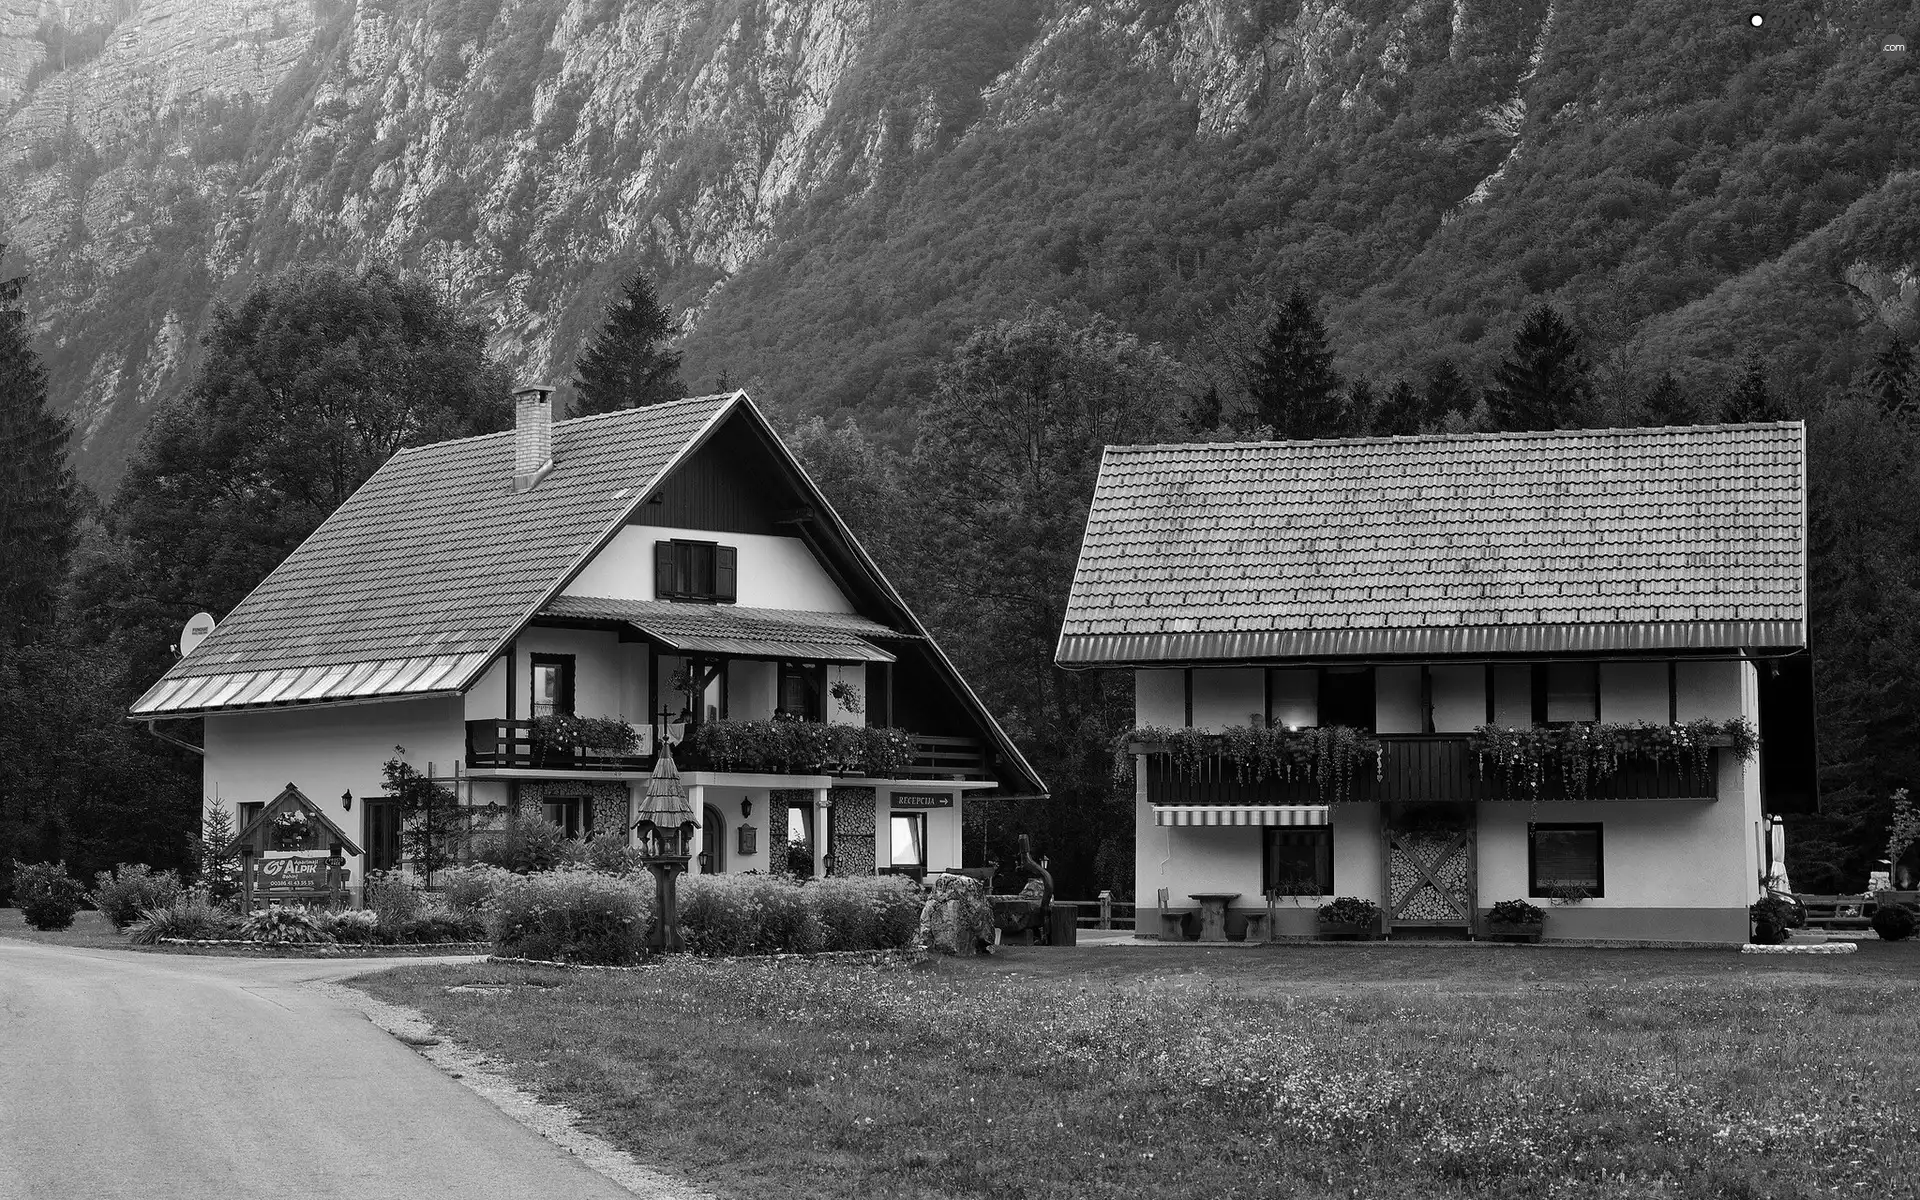 Slovenia, Mountains, Houses